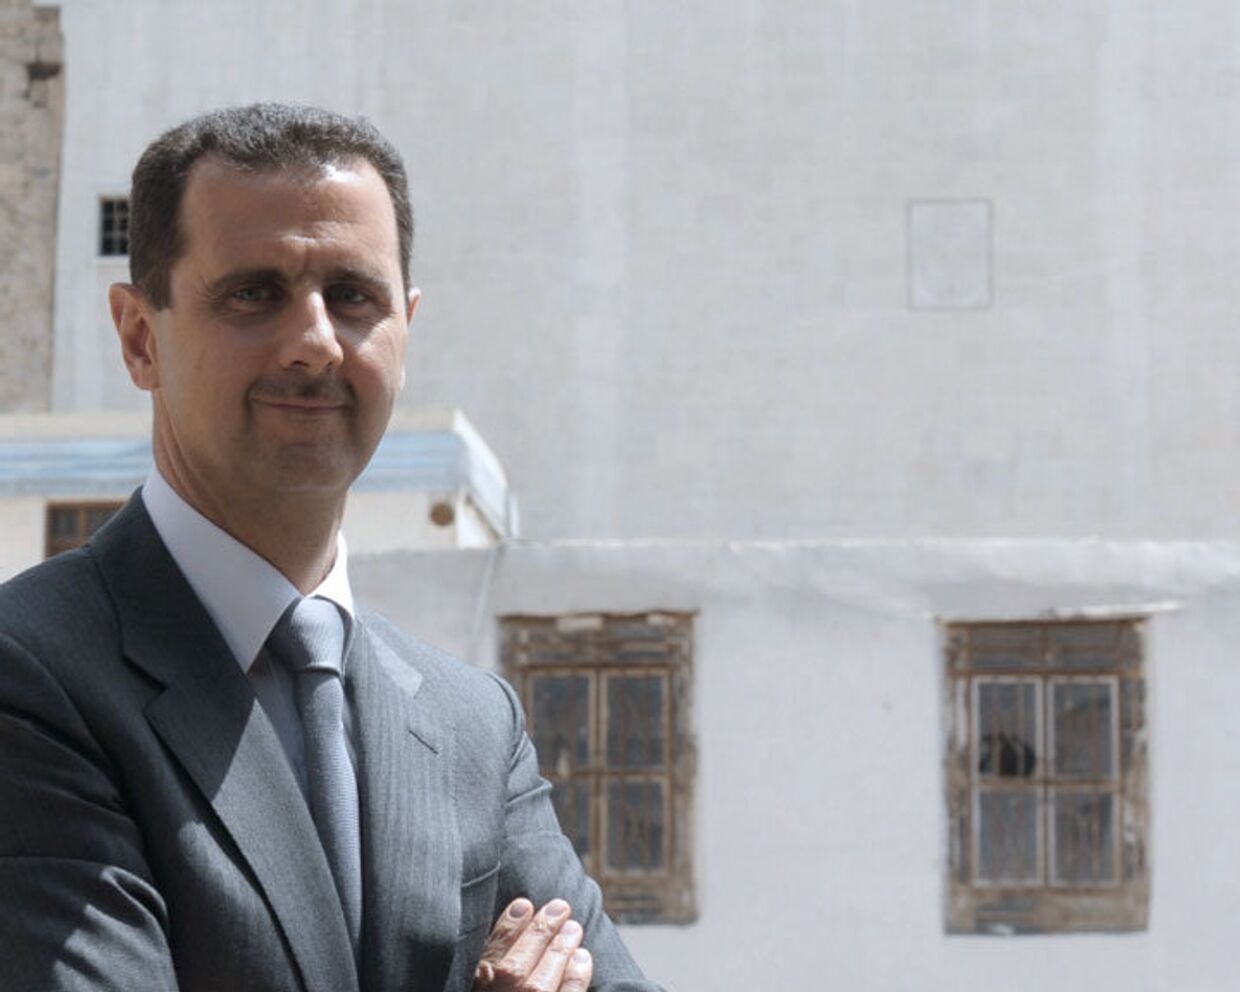 Президент Сирии заявил о прекращении всех операций против демонстрантов